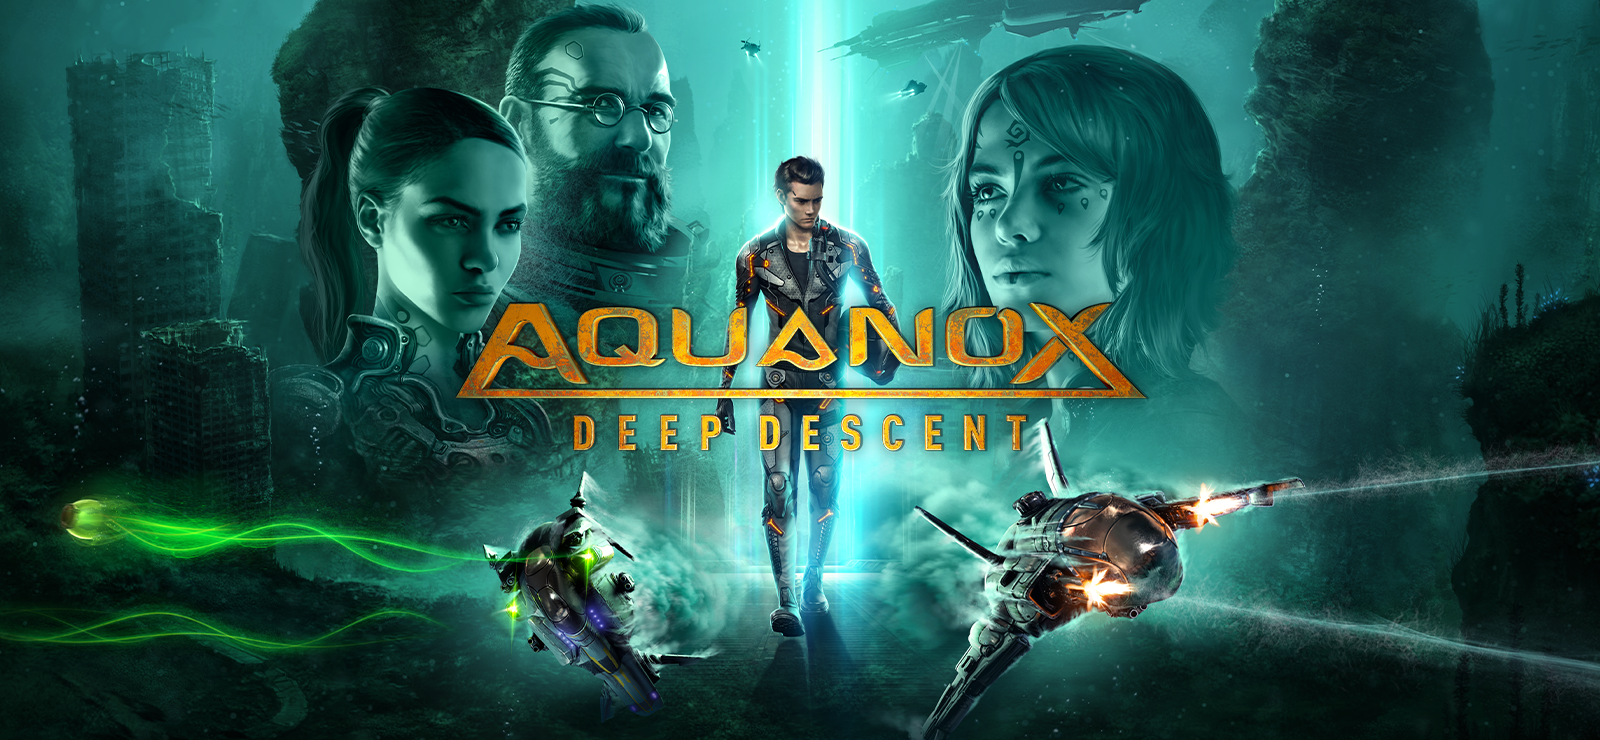 Aquanox Deep Descent Collector’s Edition